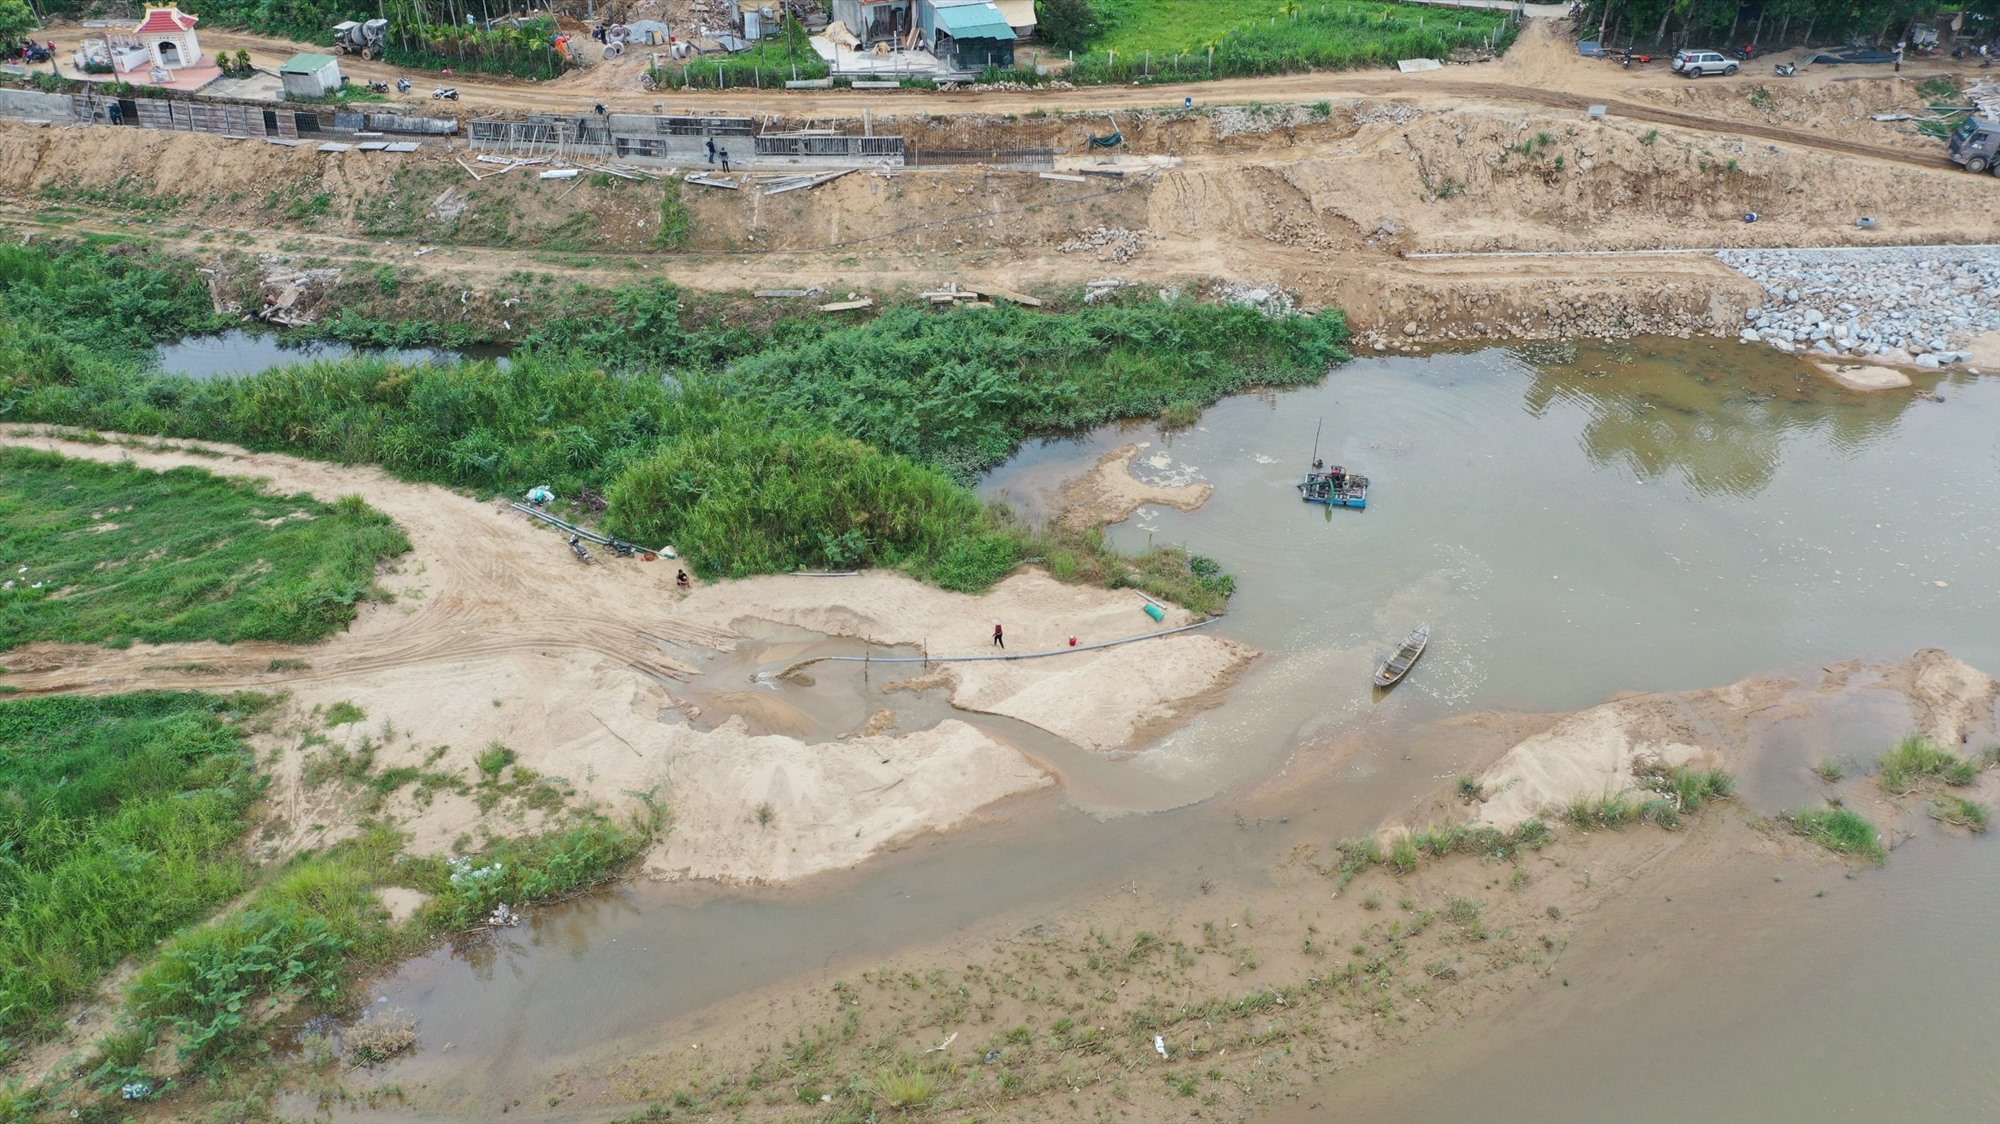 Hoạt động khai thác cát trái phép diễn ra giữa ban ngày tại thôn Thọ Lộc Tây, xã Tịnh Hà. Ảnh: Ngọc Viên